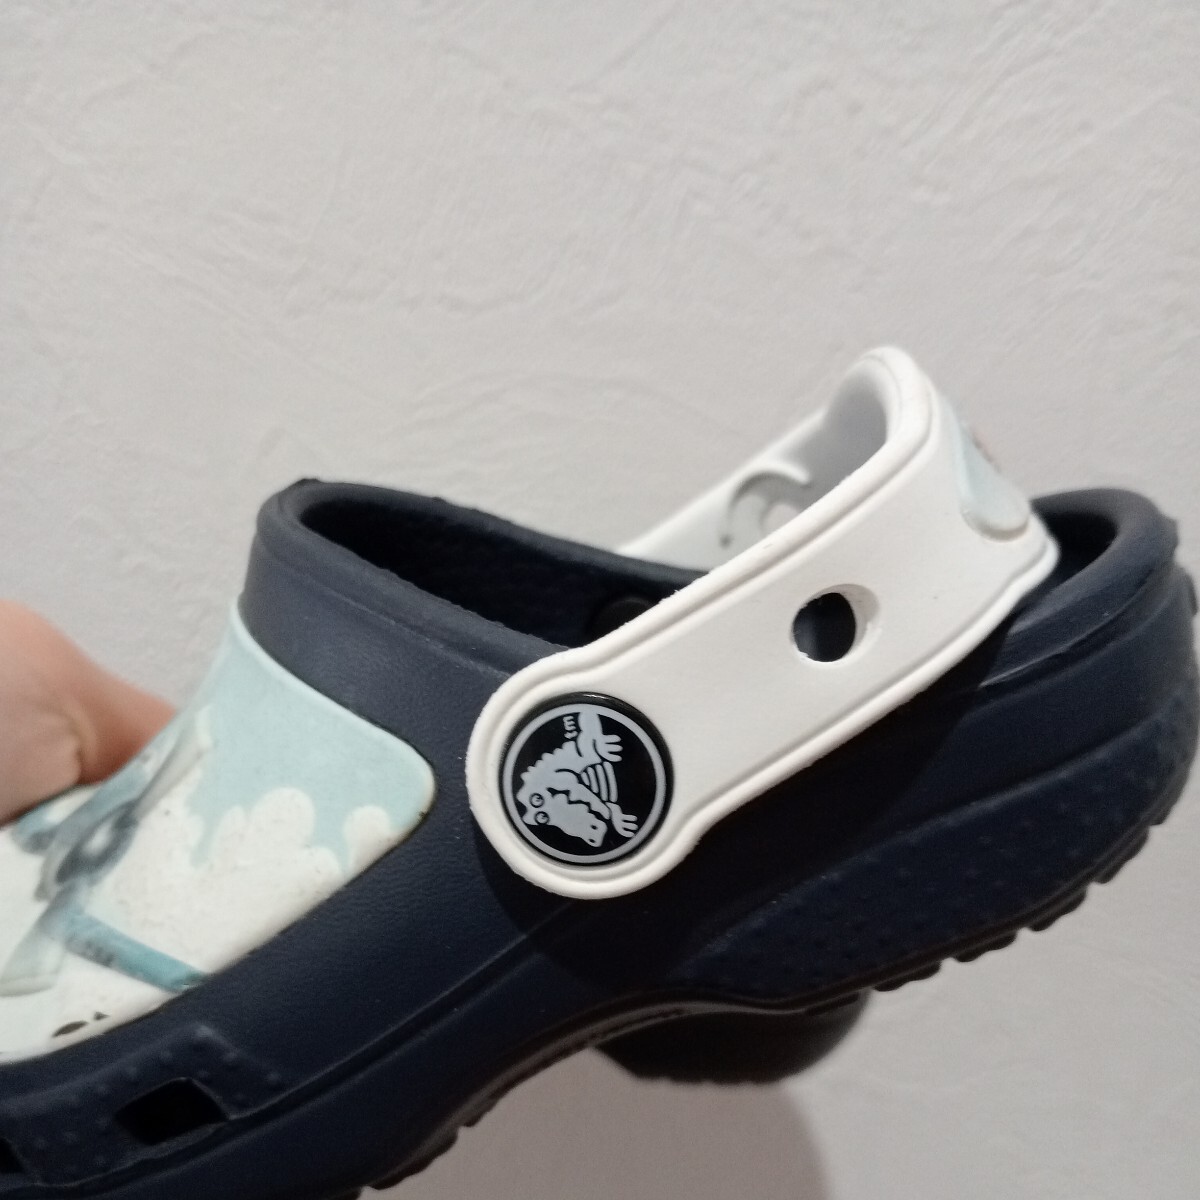  новый товар? не использовался Crocs Disney crocs обувь 15.5 ребенок сандалии 8C9 15 15.5cm сандалии есть перевод 